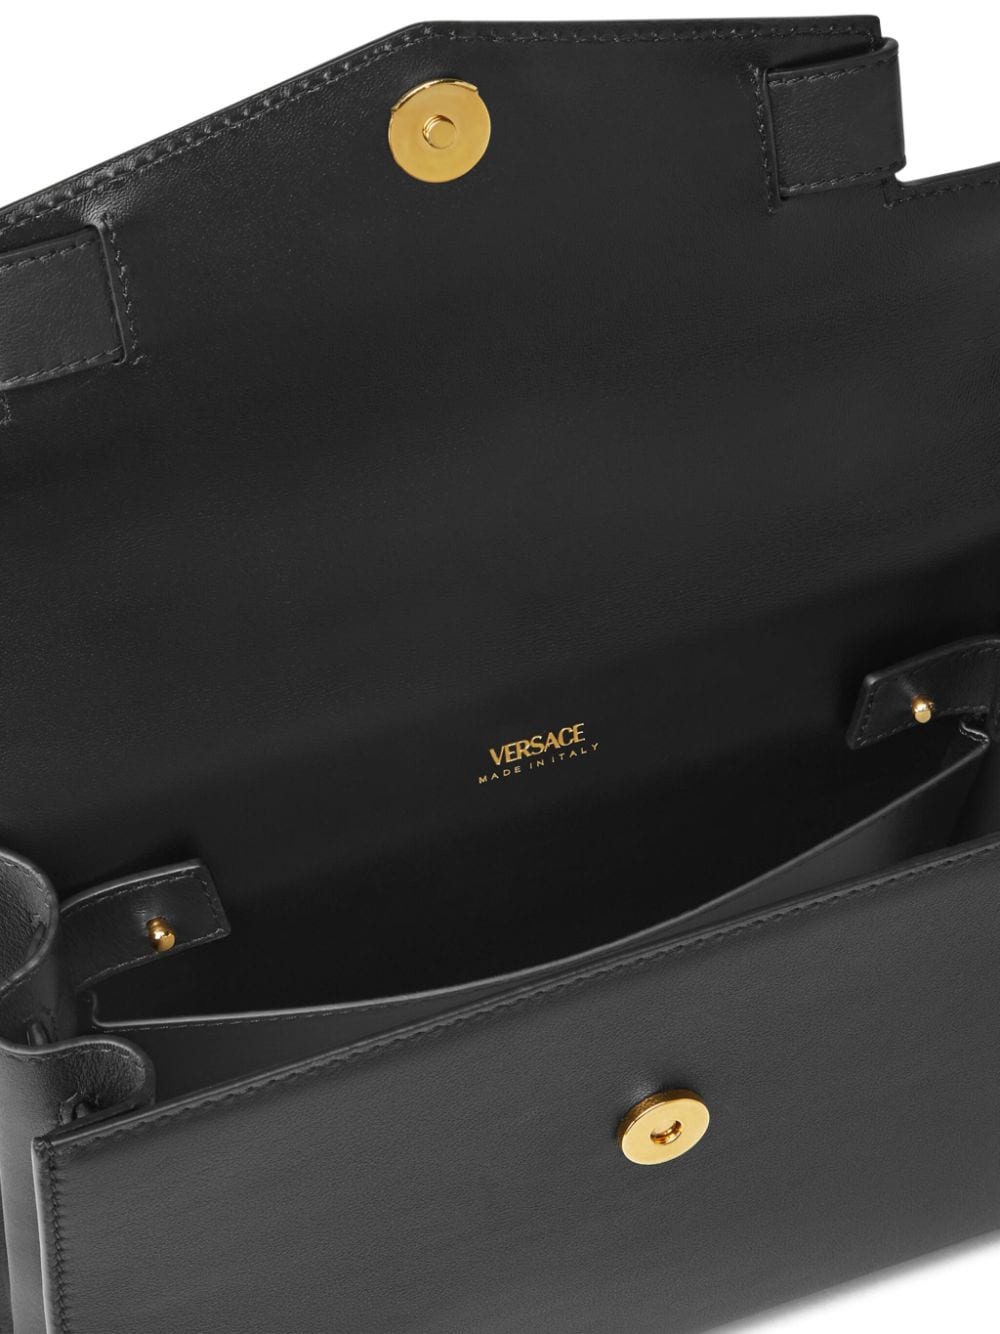 Versace Black Medusa '95 Handbag